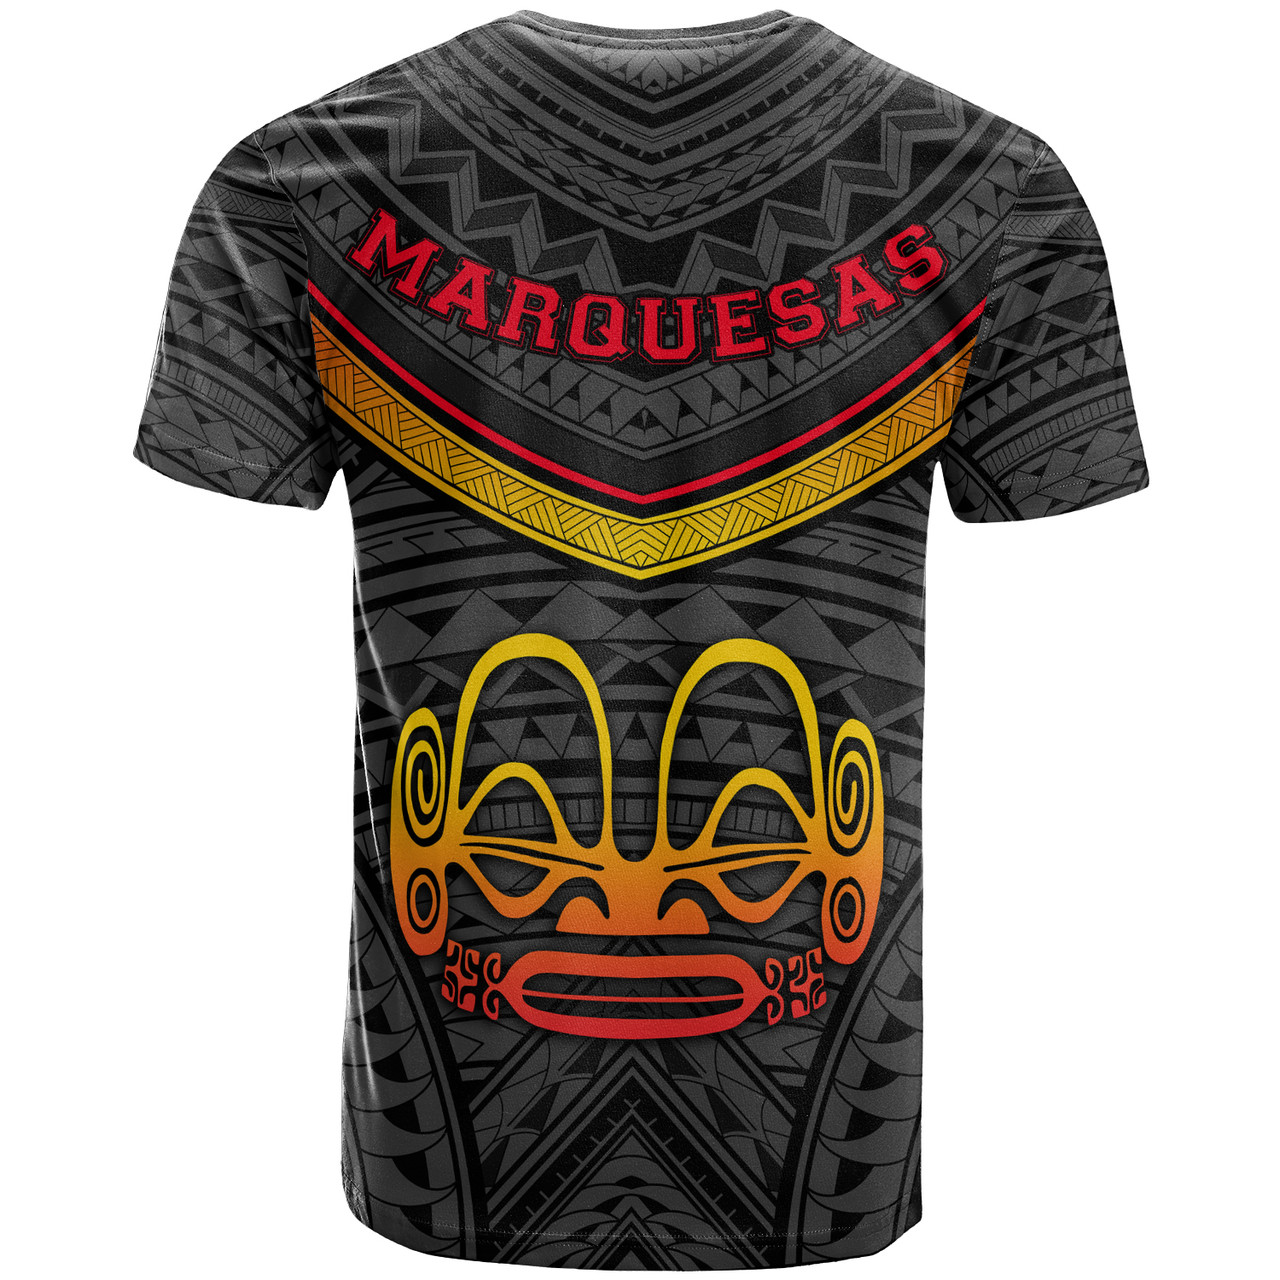 Marquesas Islands Custom Personalised Baseball Shirt Polynesian